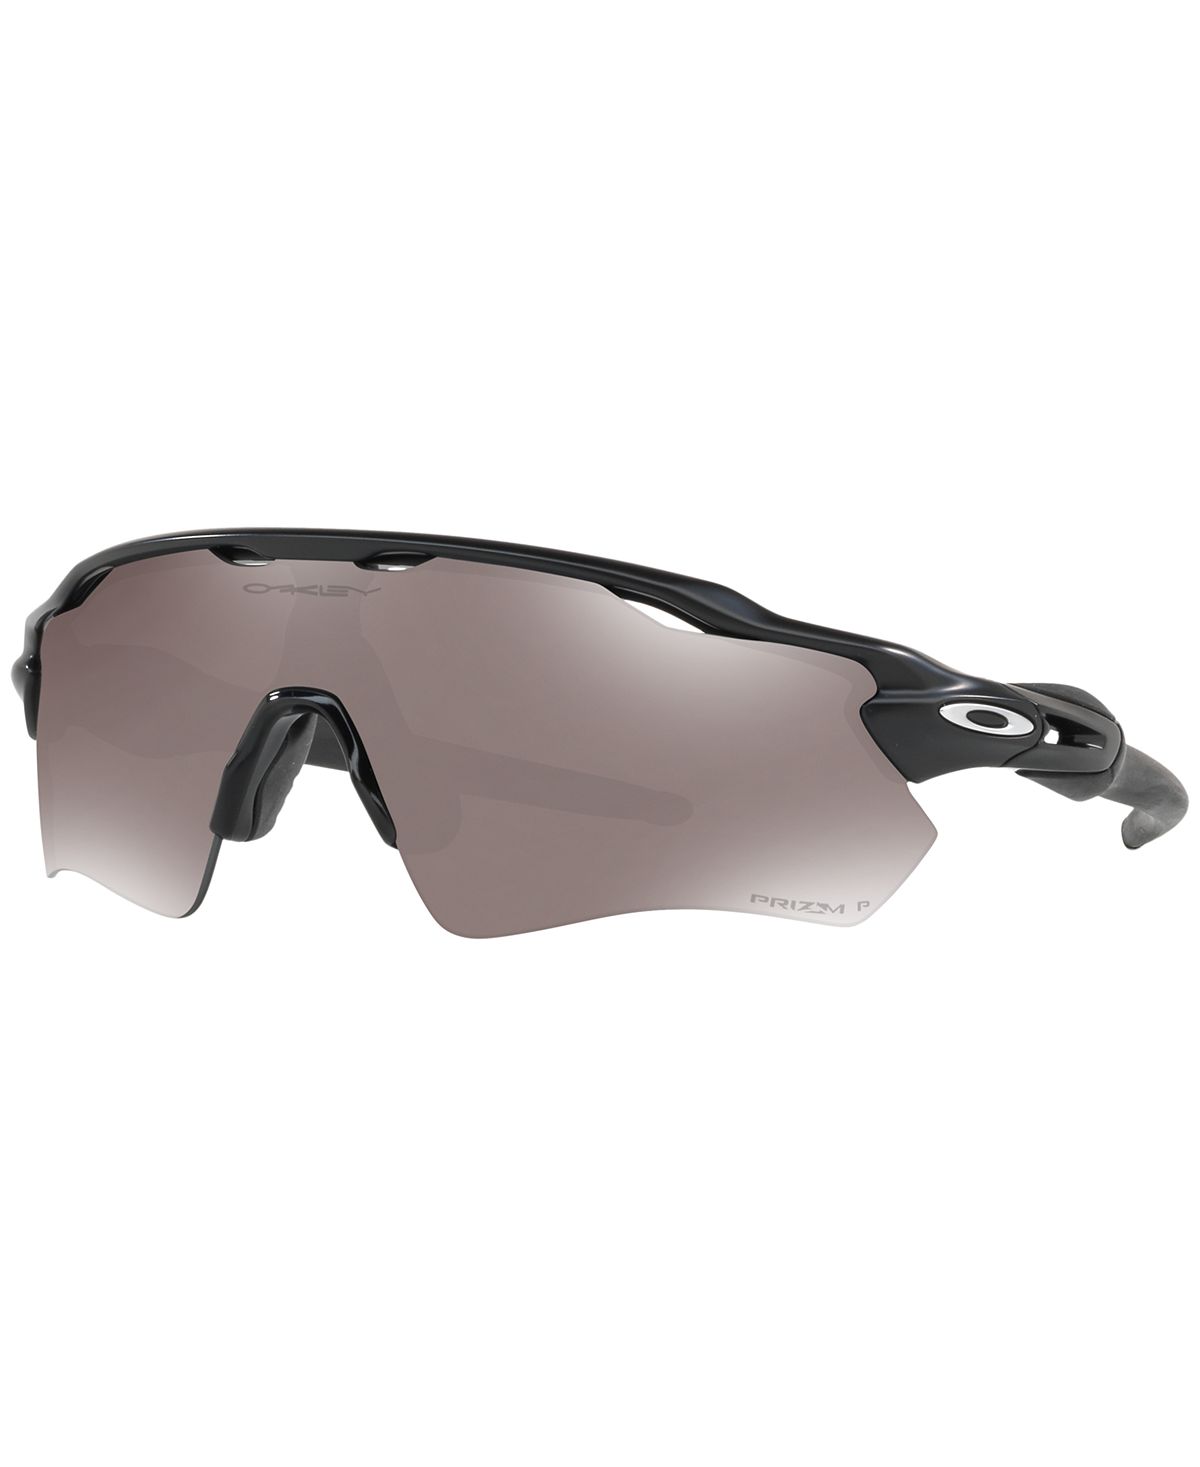 Мужские поляризационные солнцезащитные очки RADAR EV PATH OO9208 Oakley цена и фото